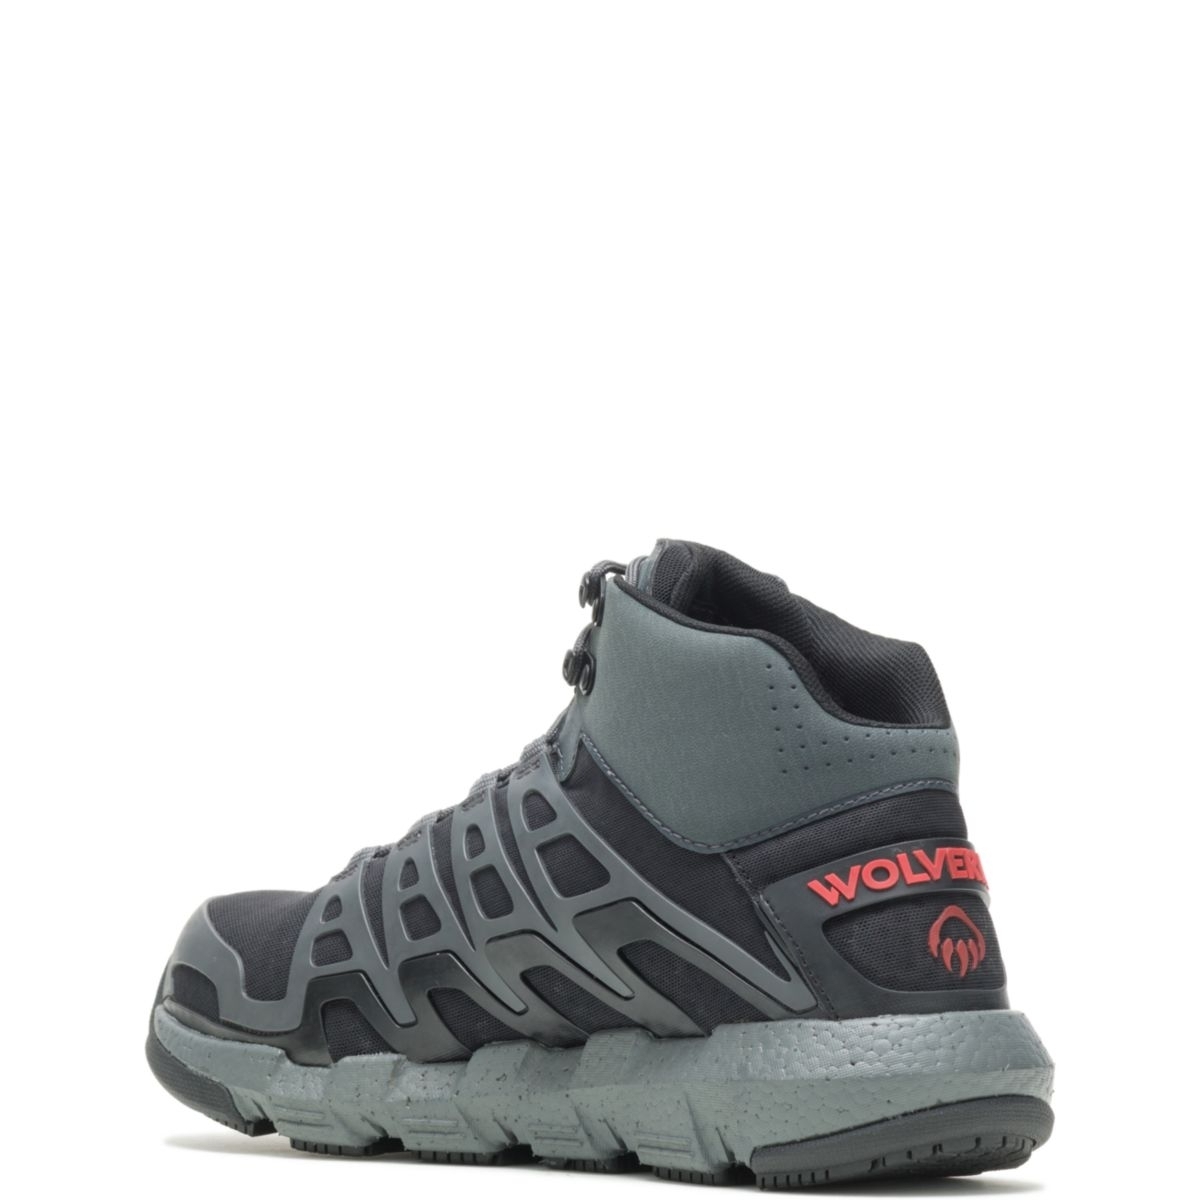 WOLVERINE Men's Rev Vent UltraSpringâ¢ DuraShocksÂ® CarbonMAXÂ® Composite Toe Work Boot Charcoal/Red - W211018 Charcoal/Red - Charcoal/Red, 7 X